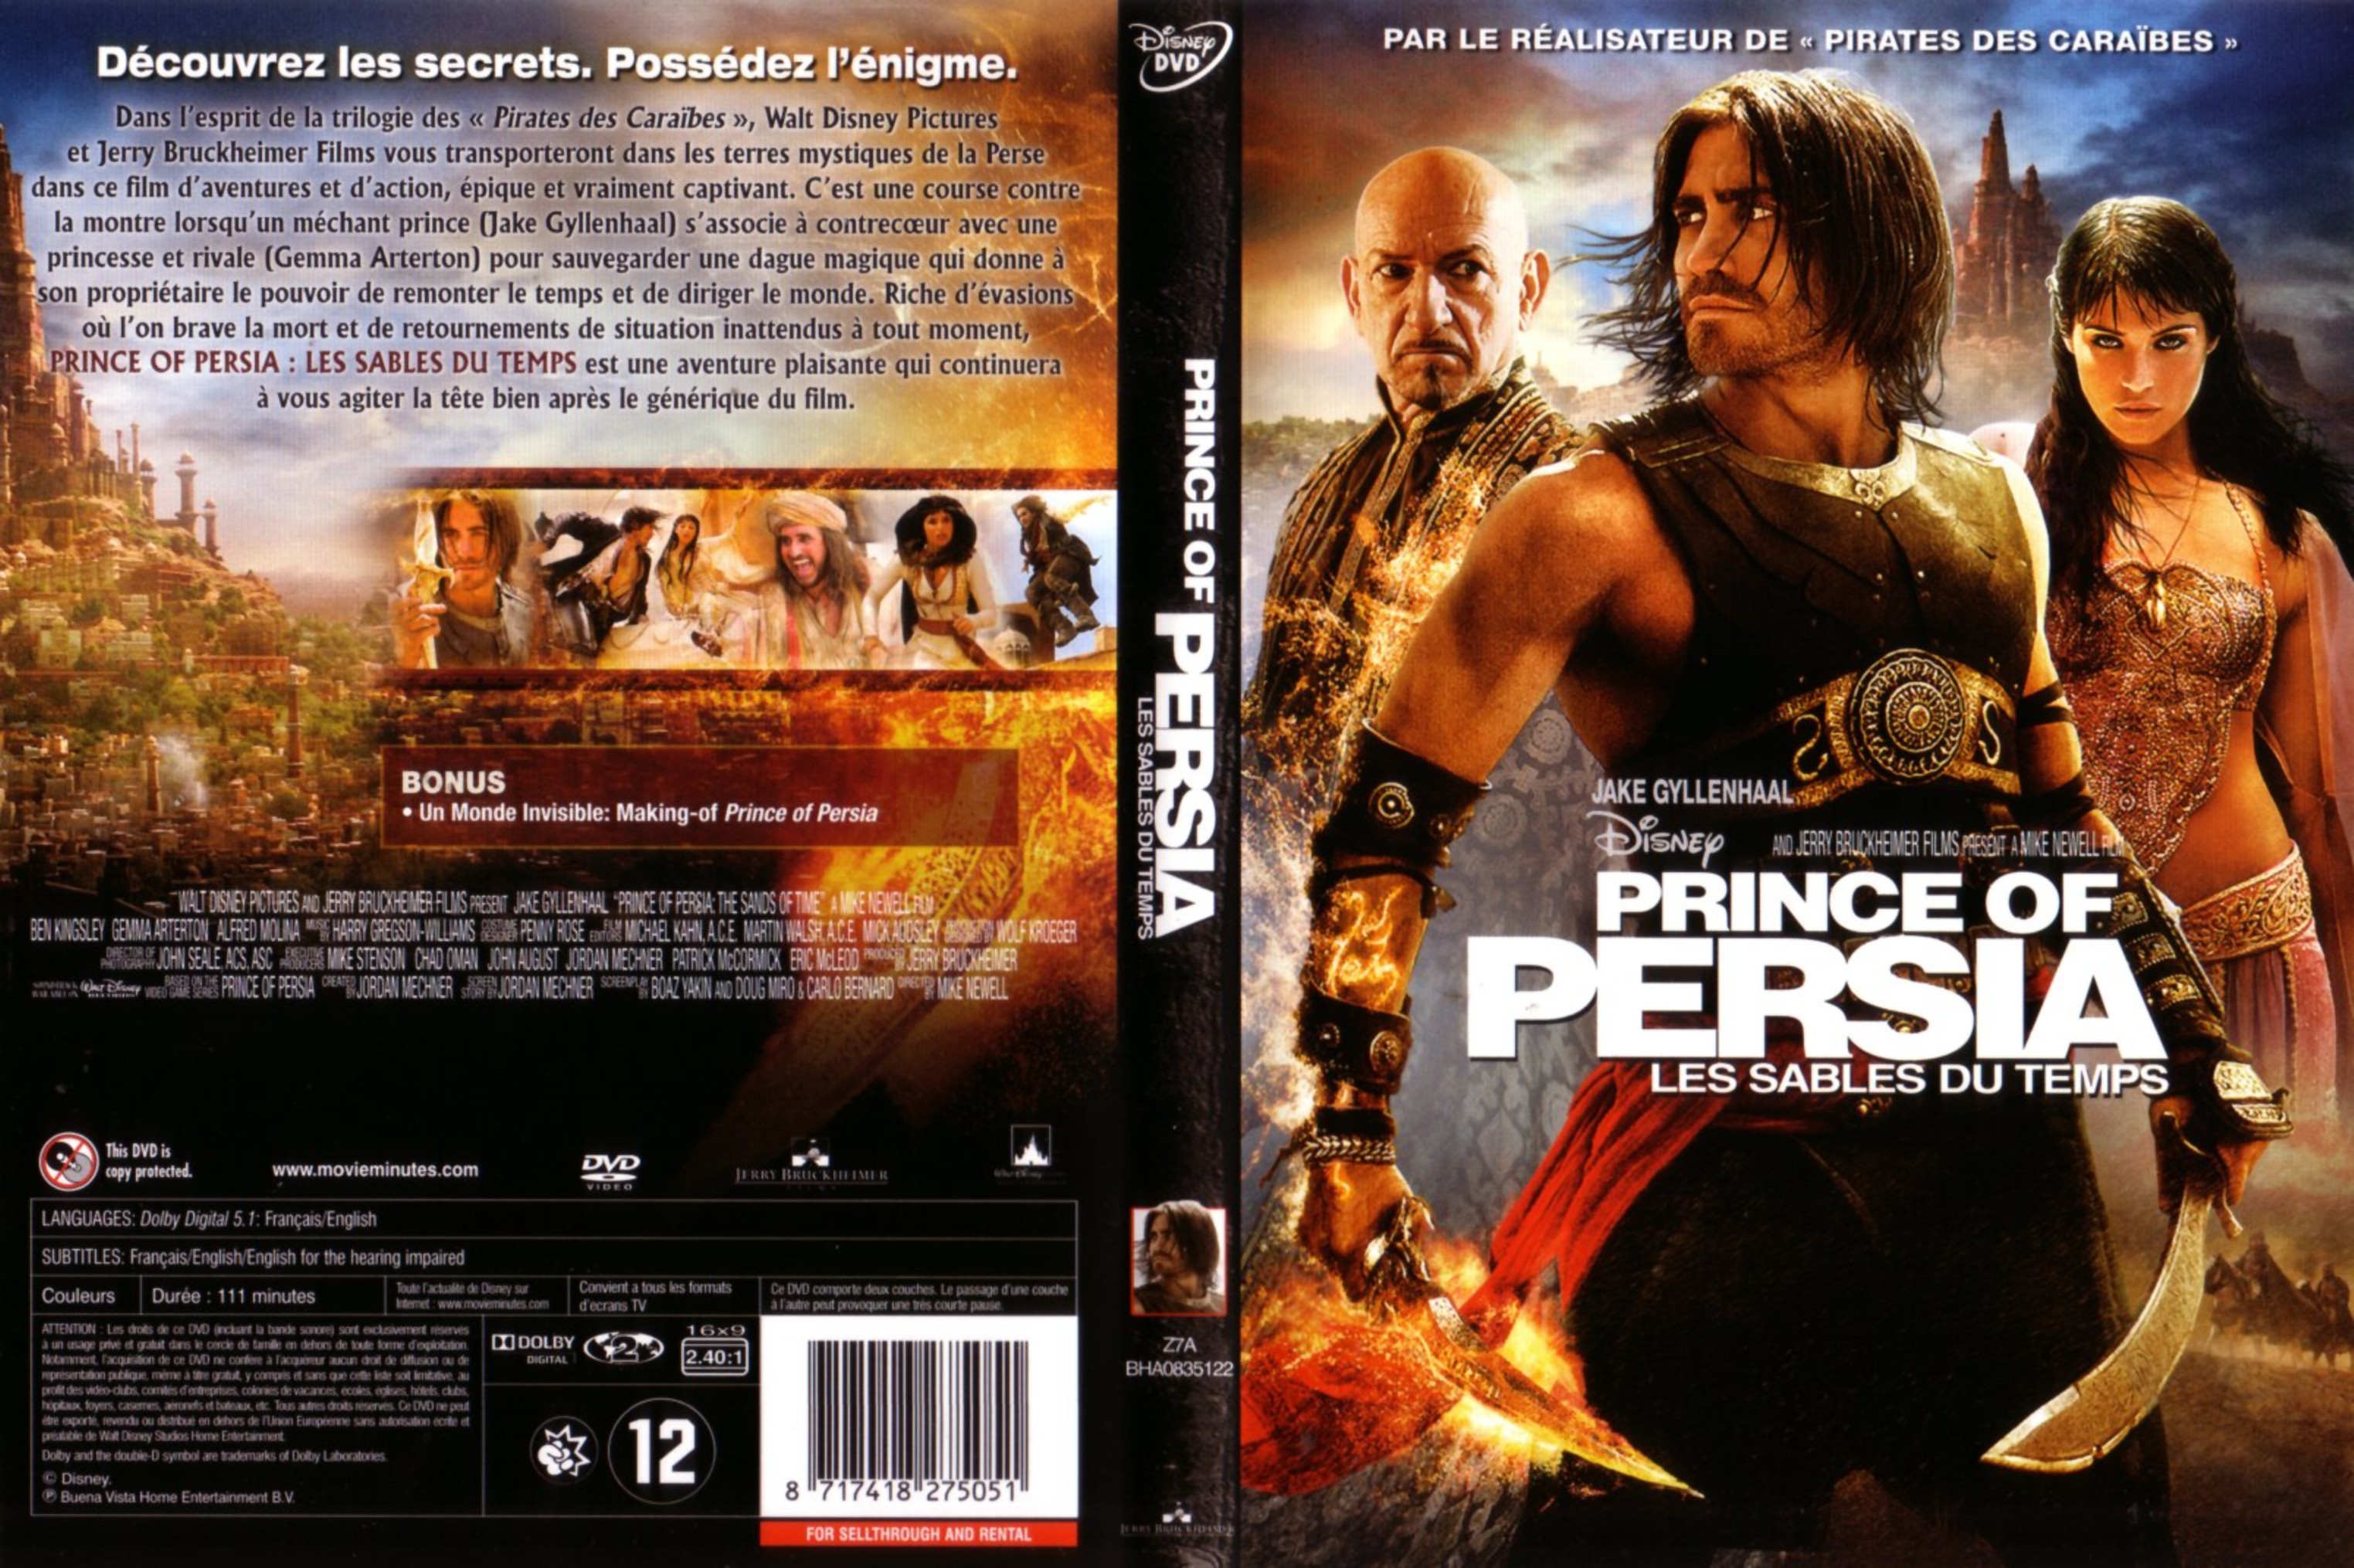 Jaquette DVD Prince of Persia - les sables du temps